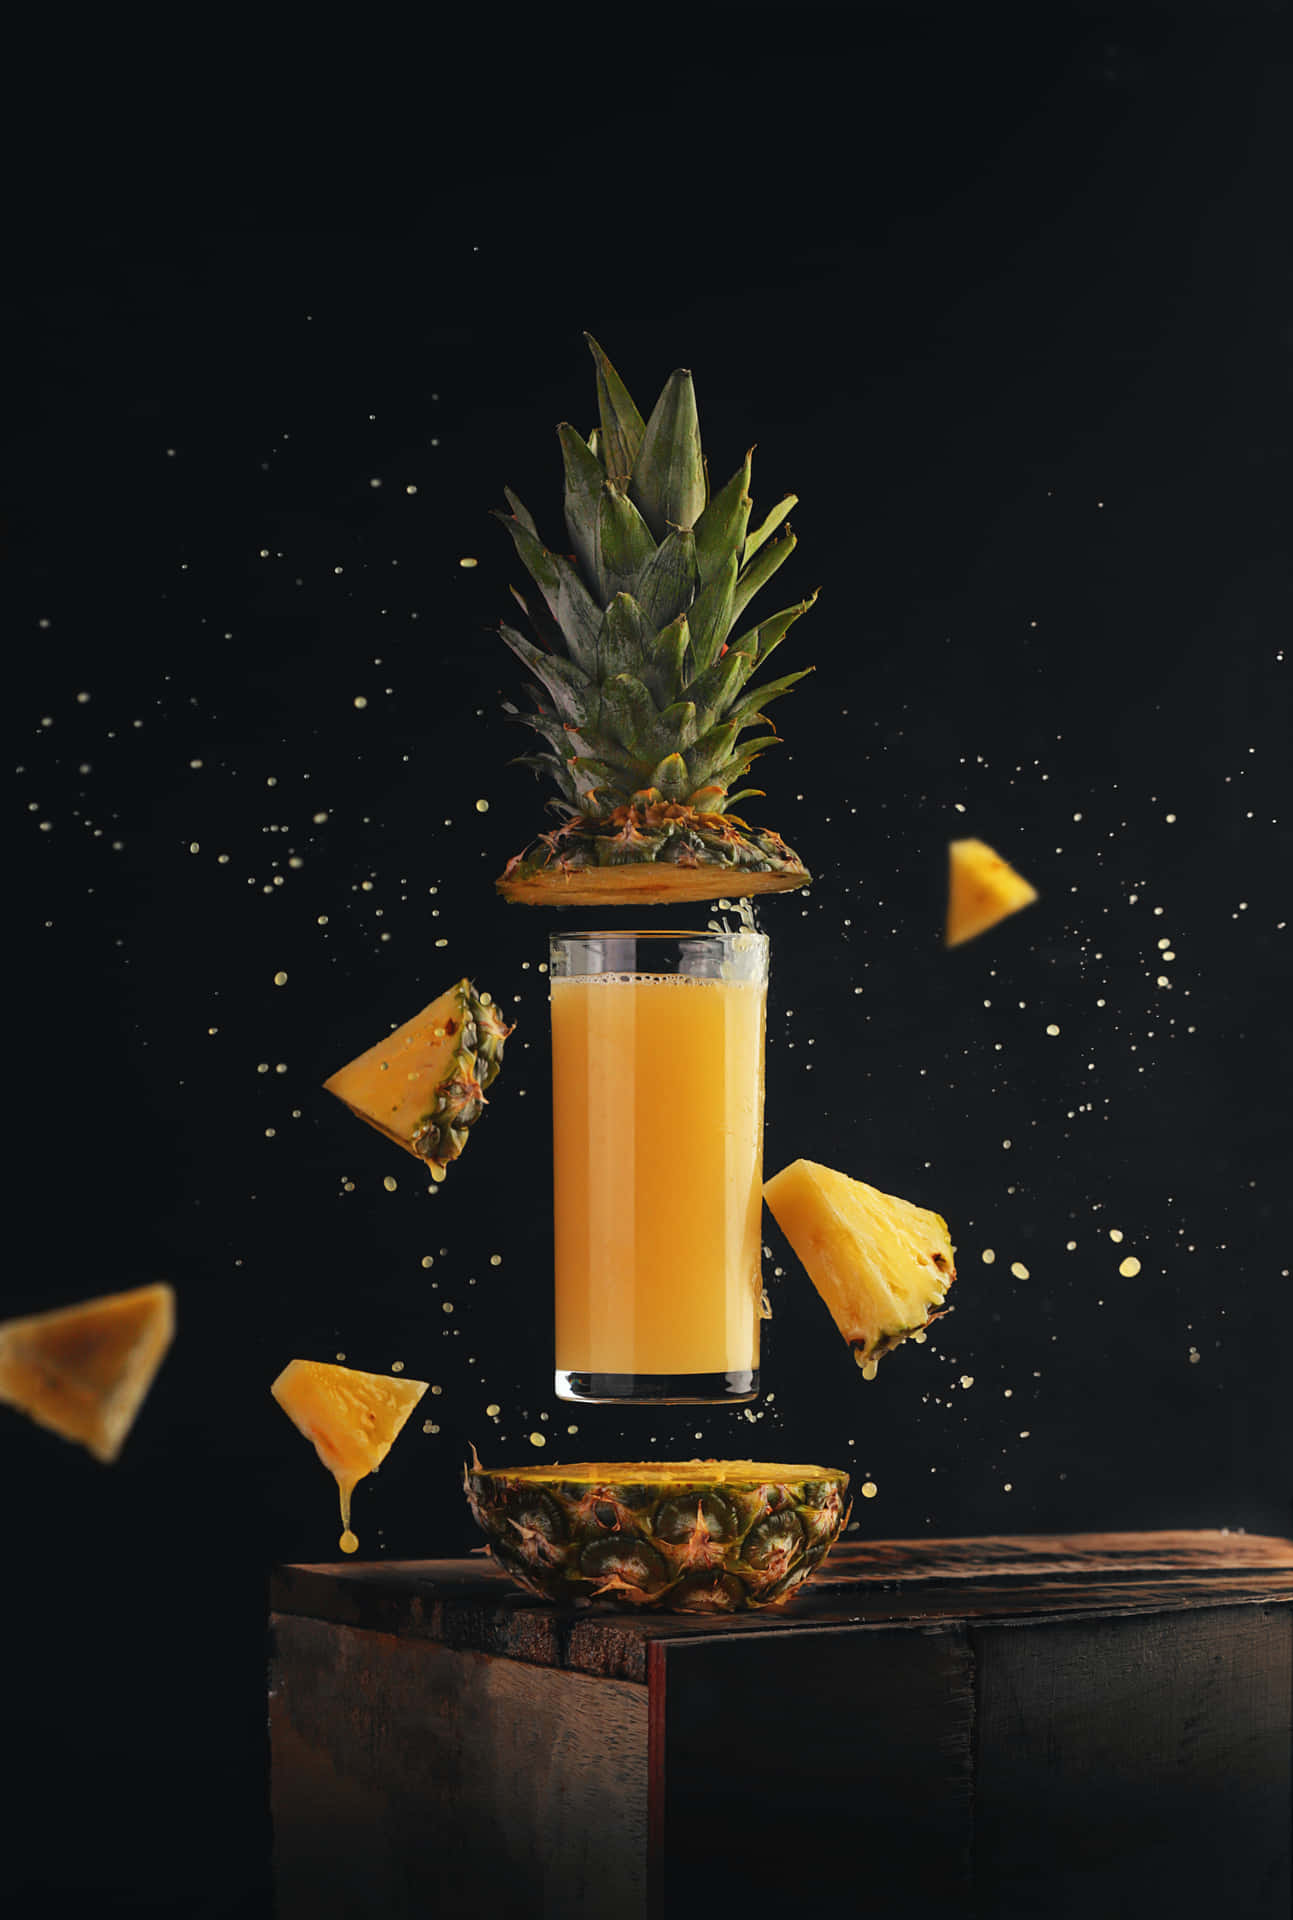 Enjoy the sweet taste of a juicy pineapple!